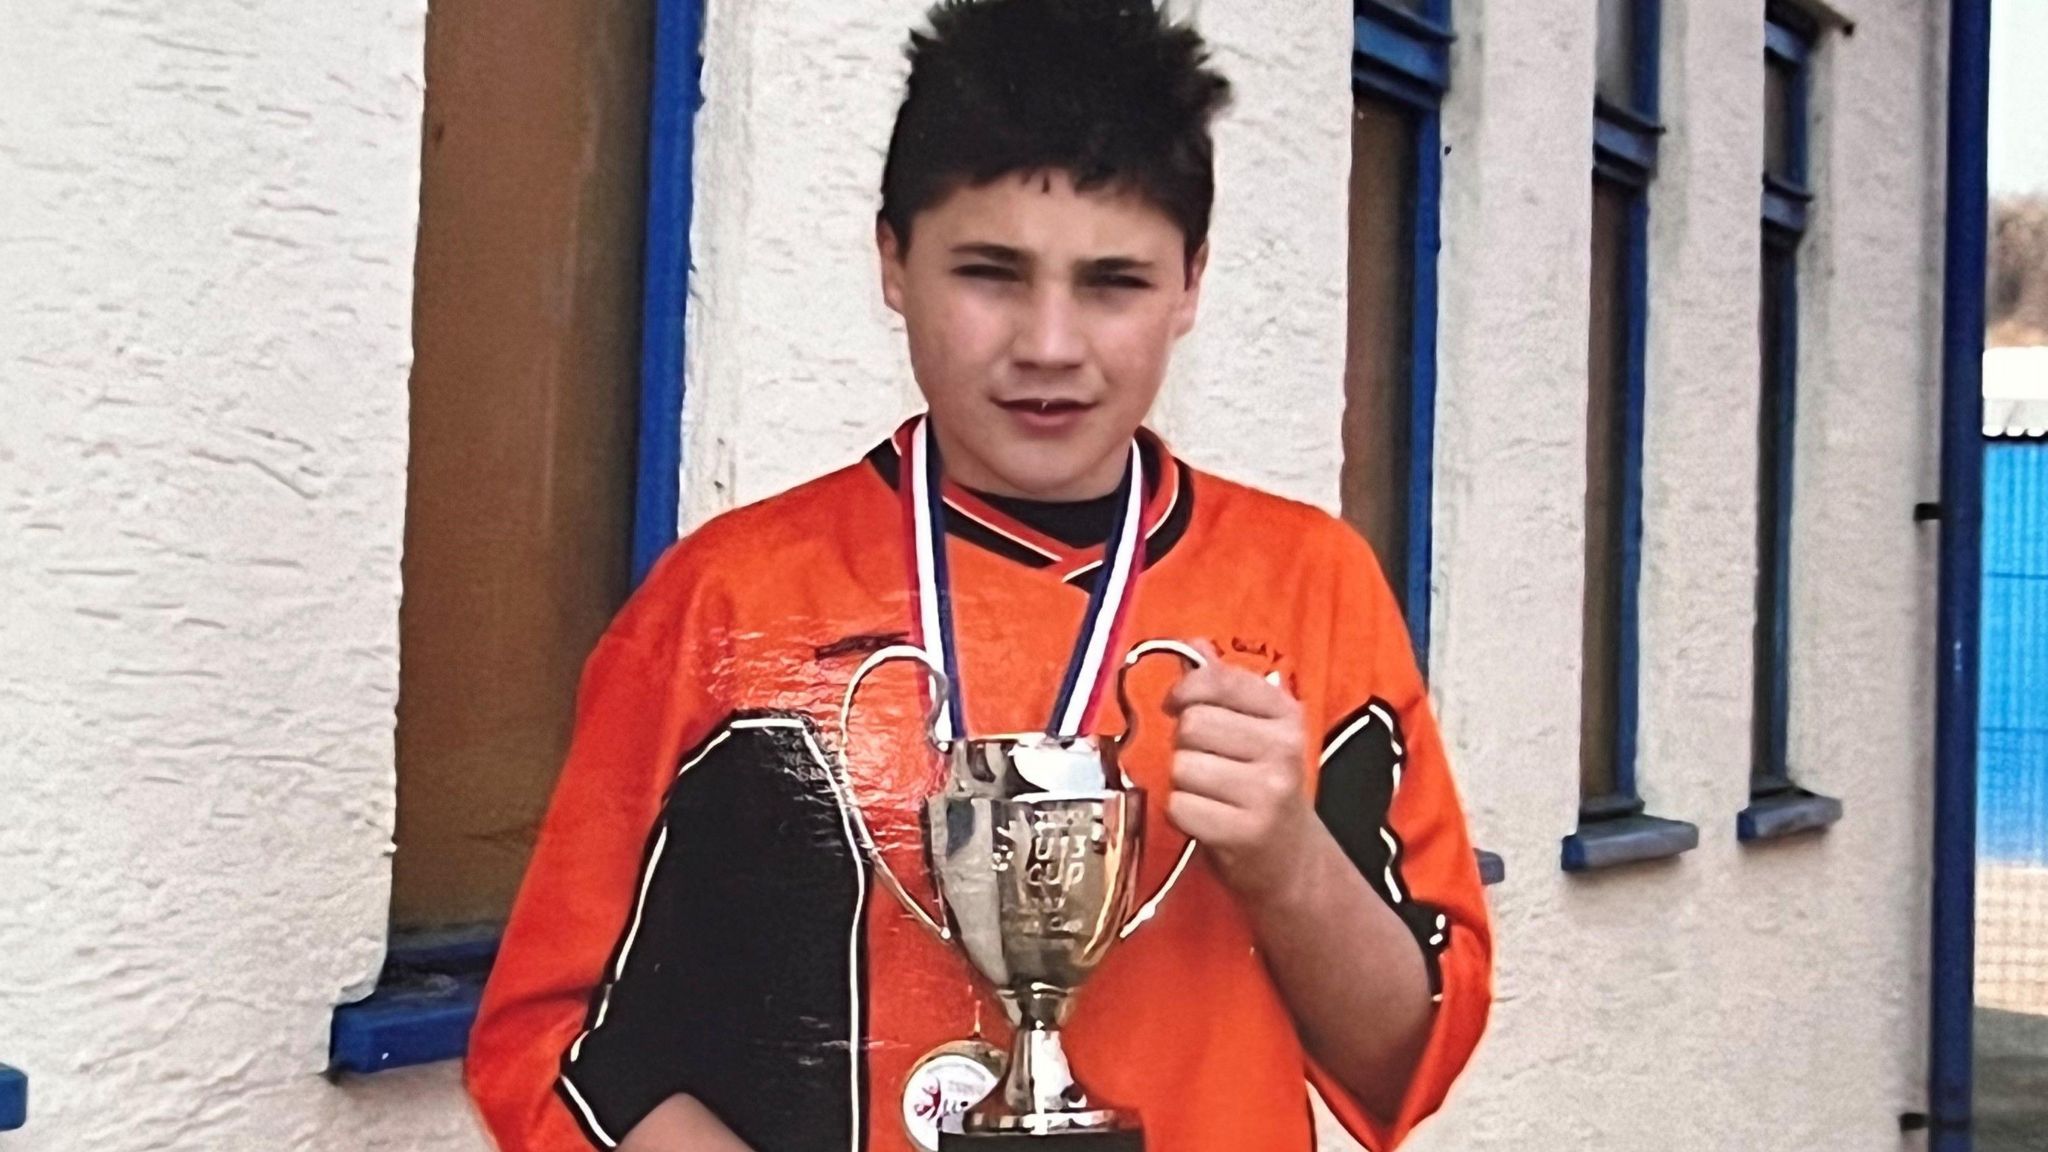 Jamie Wynn holding a football trophy as a boy